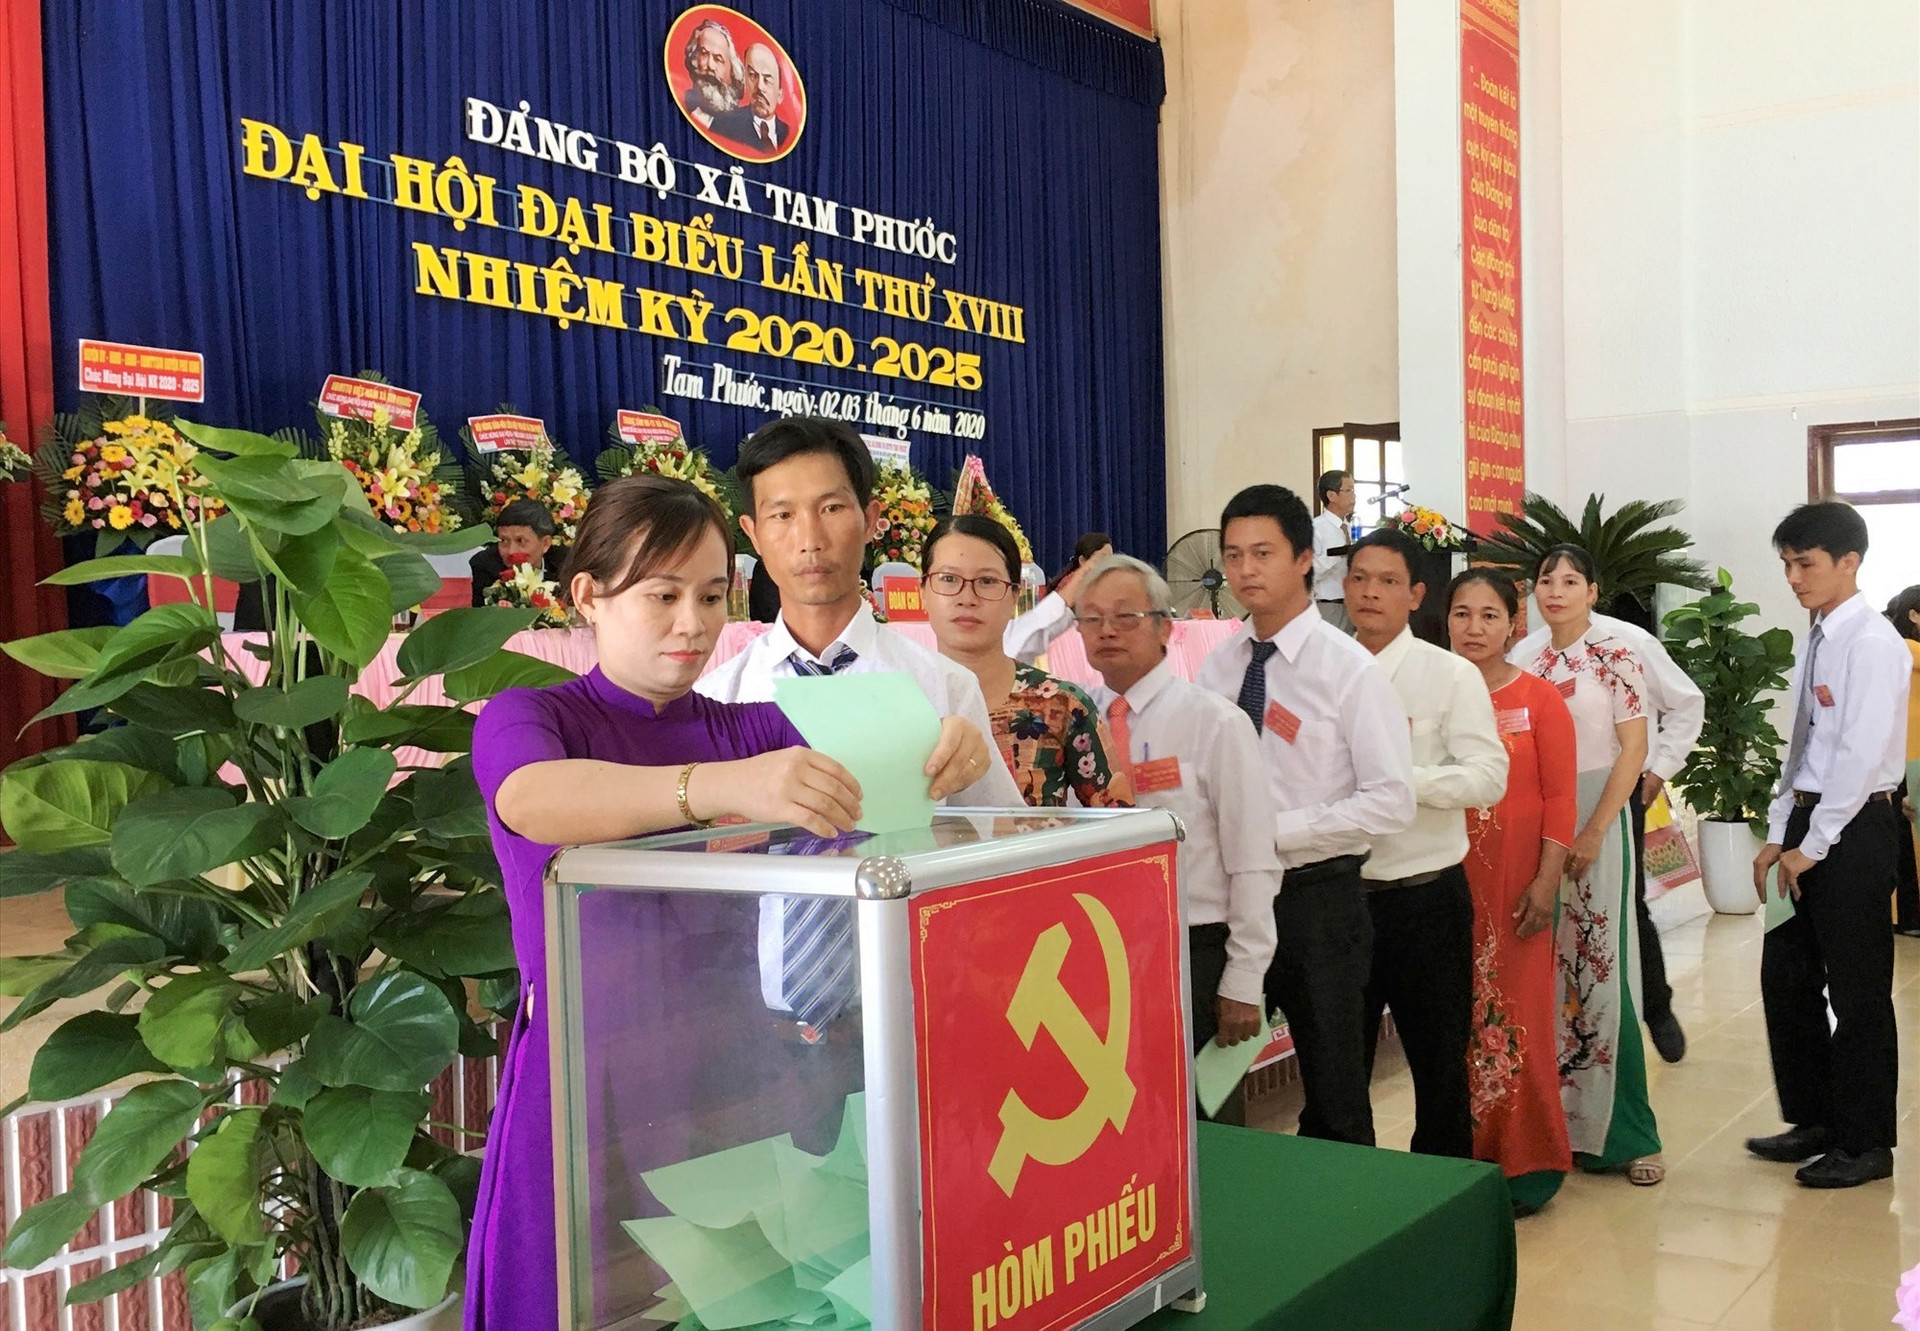 Đại hội tiến hành công tác bầu cử Ban Chấp hành Đảng bộ xã Tam phước khóa XVIII. Ảnh: H.C